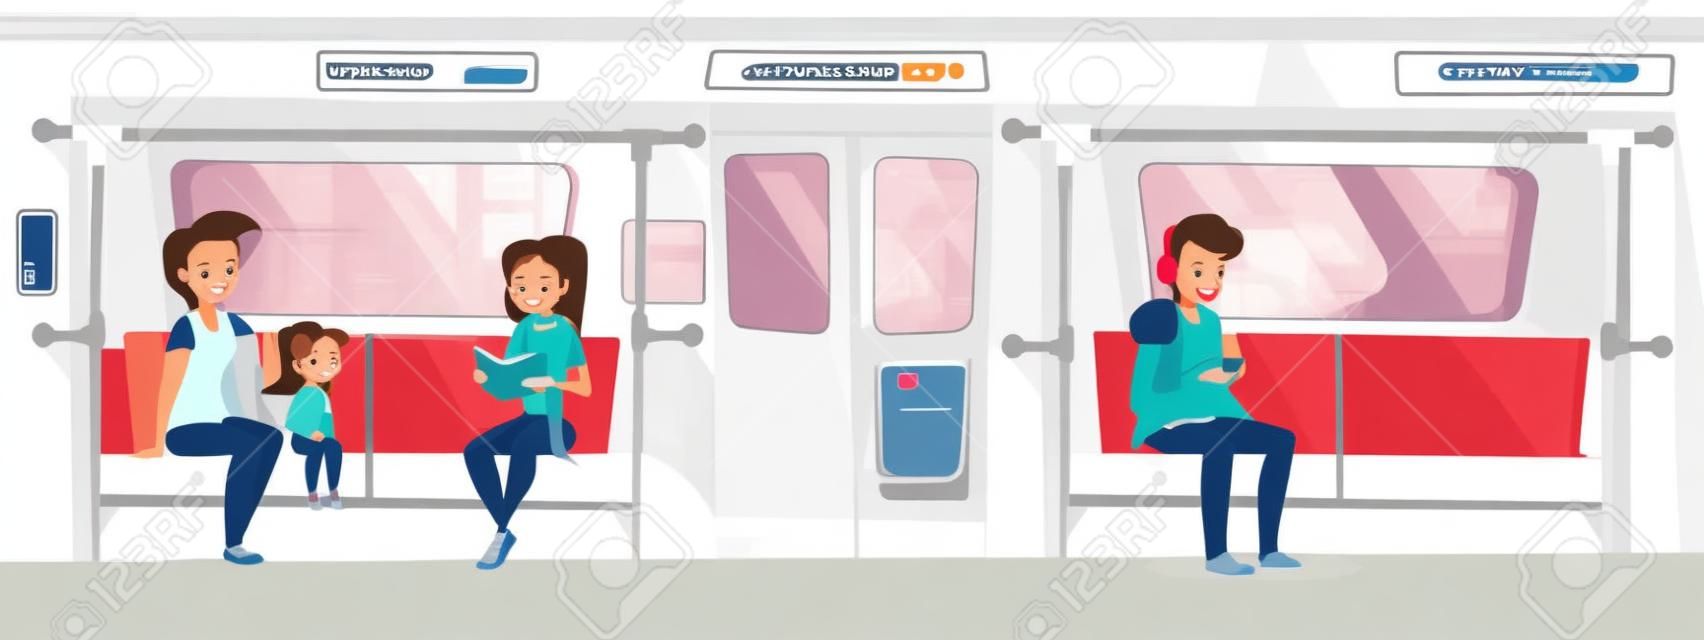 Ludzie w ilustracji wektorowych pociąg metra. Młoda kobieta z córką w metrze czytanie książki i uśmiech, nastolatek chłopiec siedzi na siedzeniu i słuchanie muzyki w słuchawkach ze smartfona